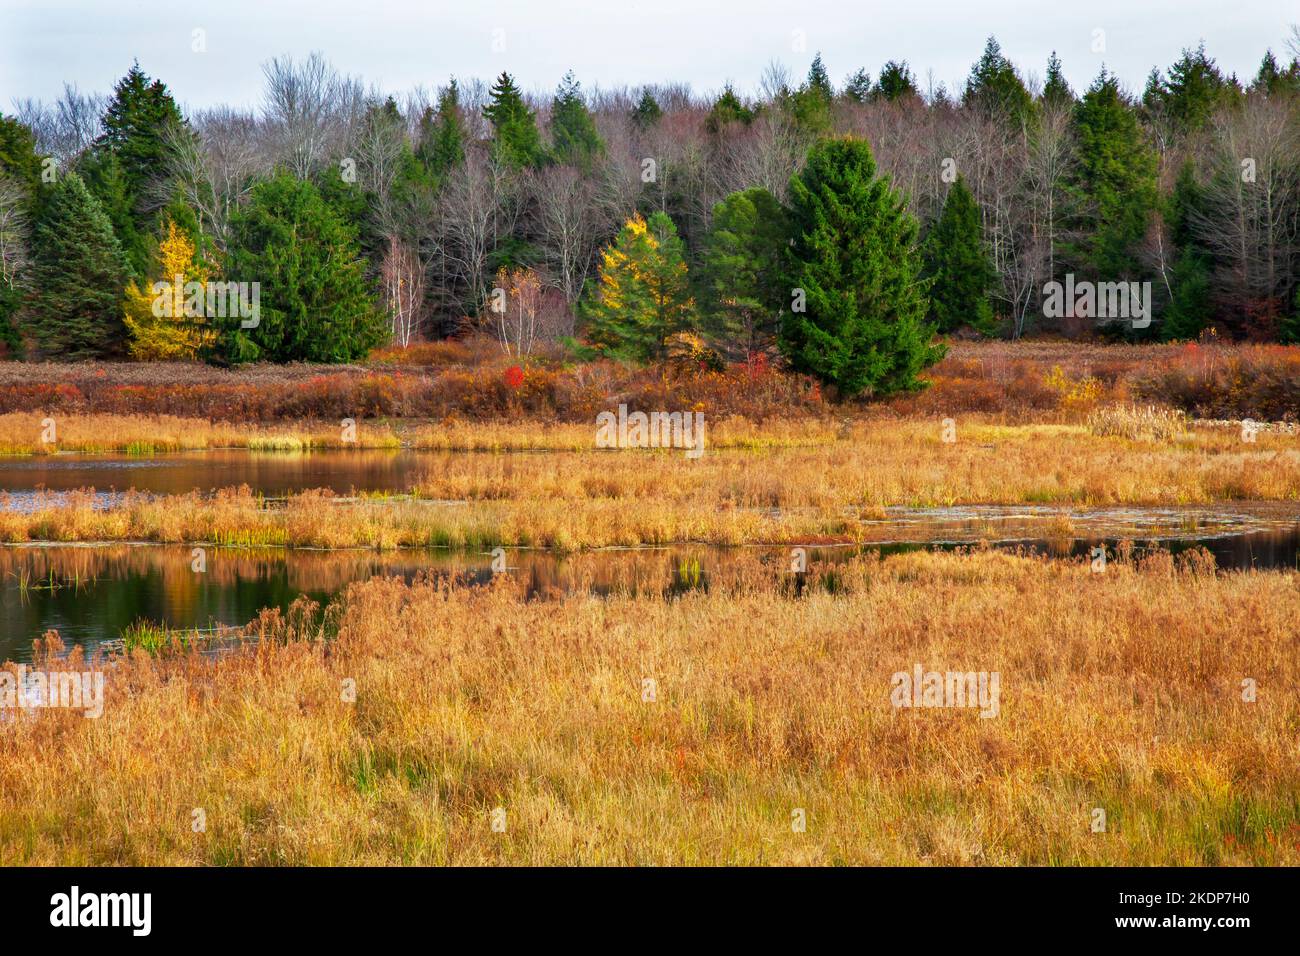 Upper Klondike Pond, zusammen mit seiner Schwester Lower Klondike Pond, auf dem Quellwasser des Lehigh River in Pennsylvania Pocono Mountains, wo importa Stockfoto